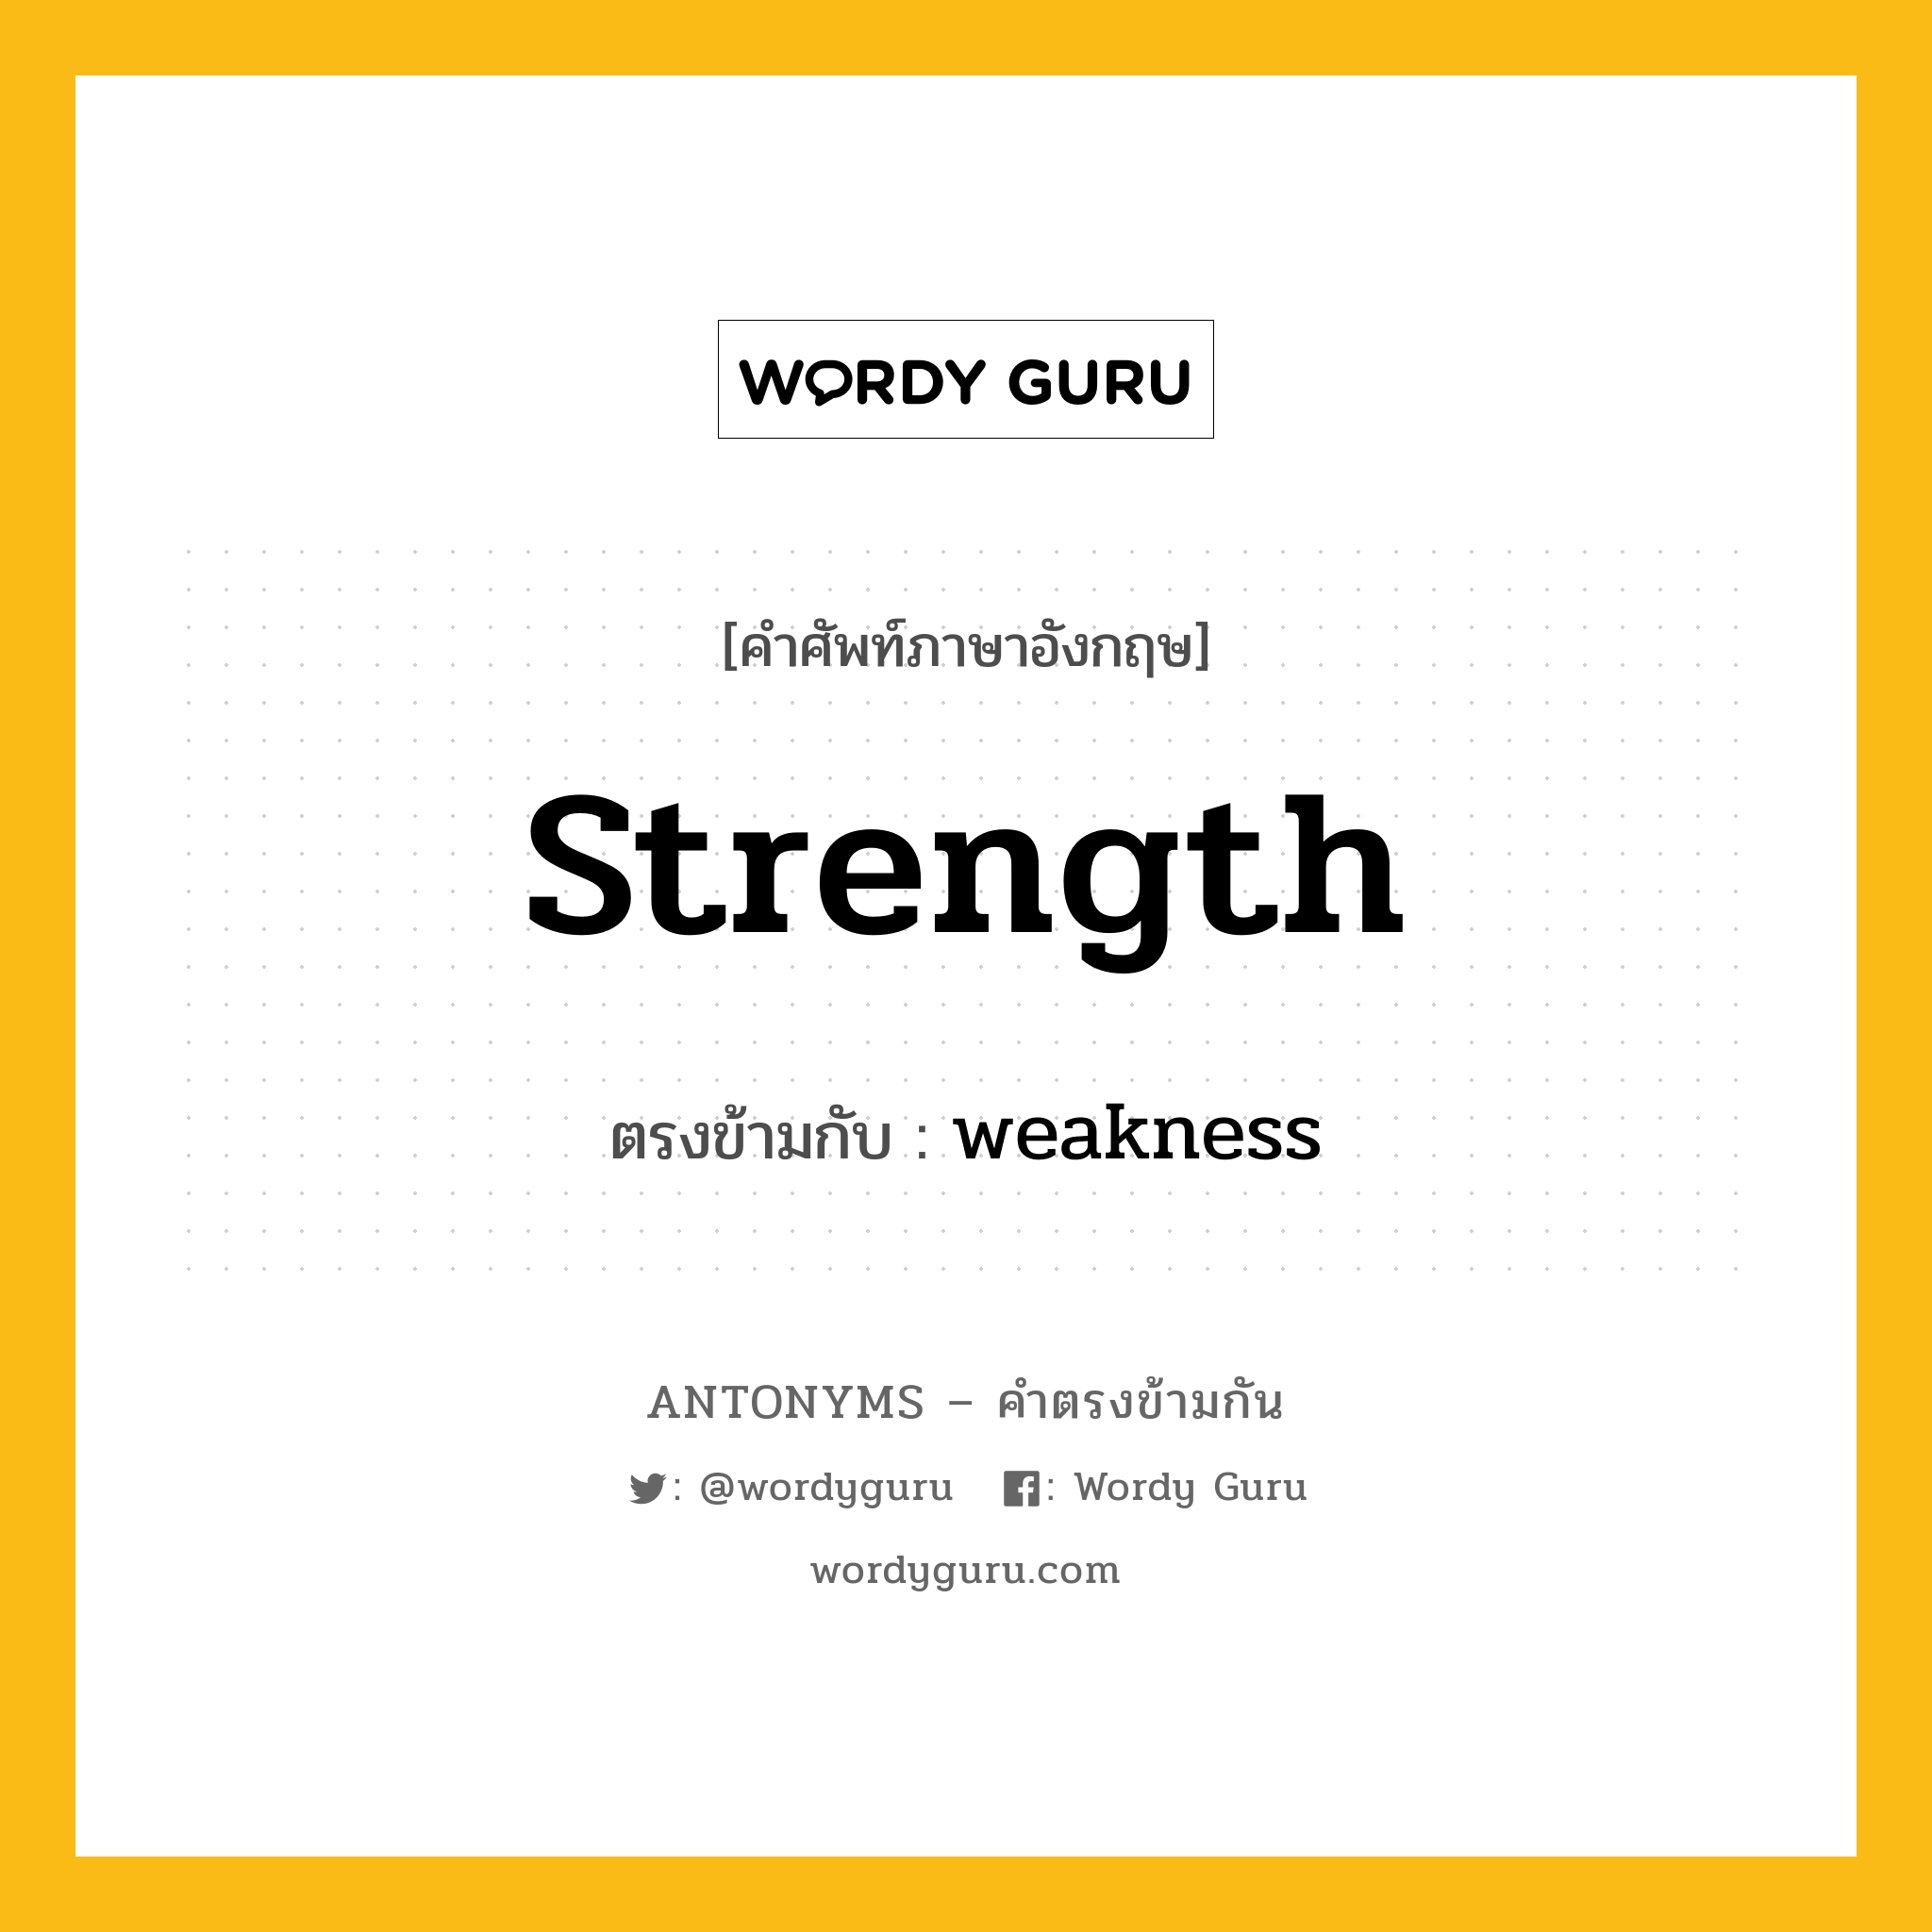 strength เป็นคำตรงข้ามกับคำไหนบ้าง?, คำศัพท์ภาษาอังกฤษ strength ตรงข้ามกับ weakness หมวด weakness